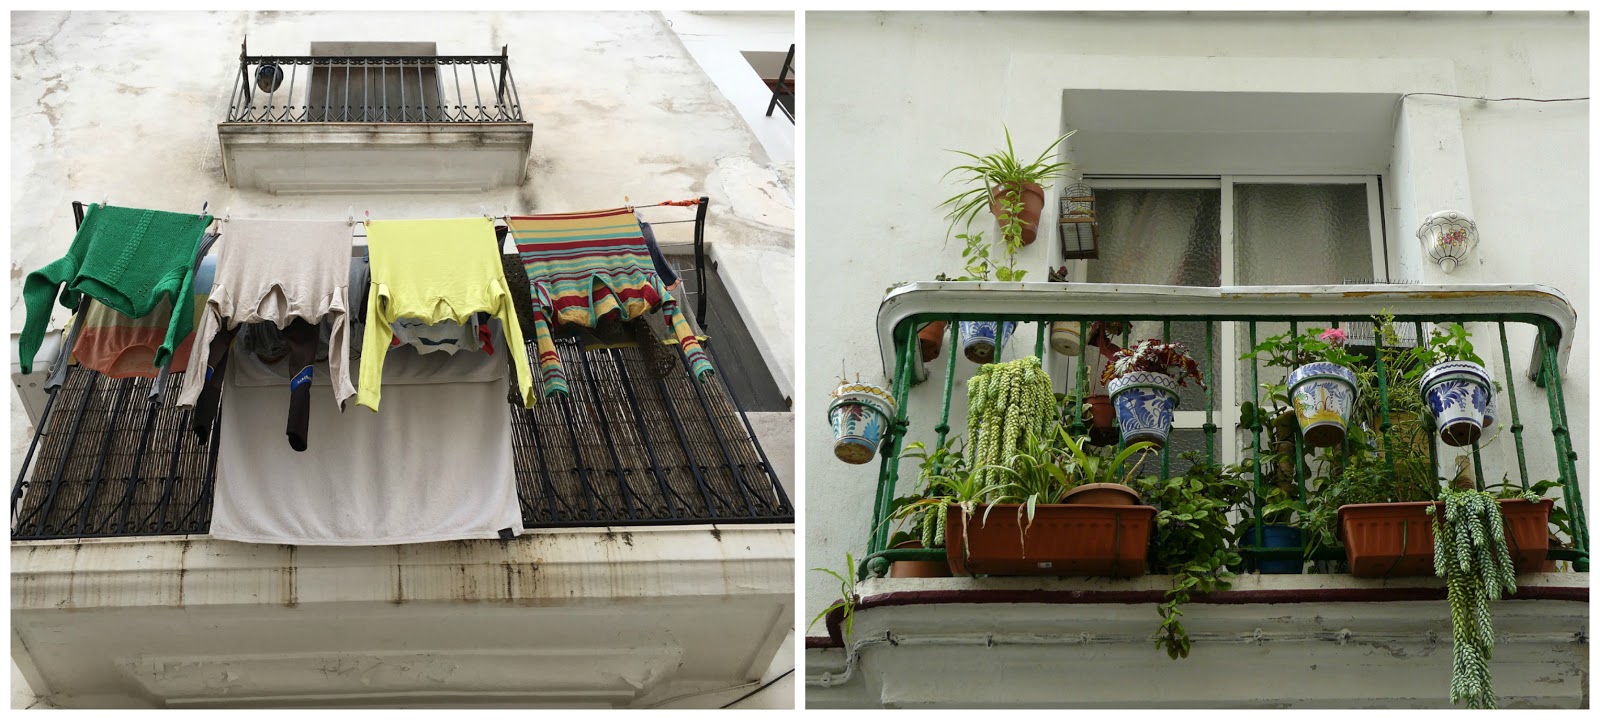 11 Tipps, wie du deinen schmalen Balkon in eine Oase verwandelst - Home & Garden - enthält Werbung für eBay - #ebay #balkon #makeover